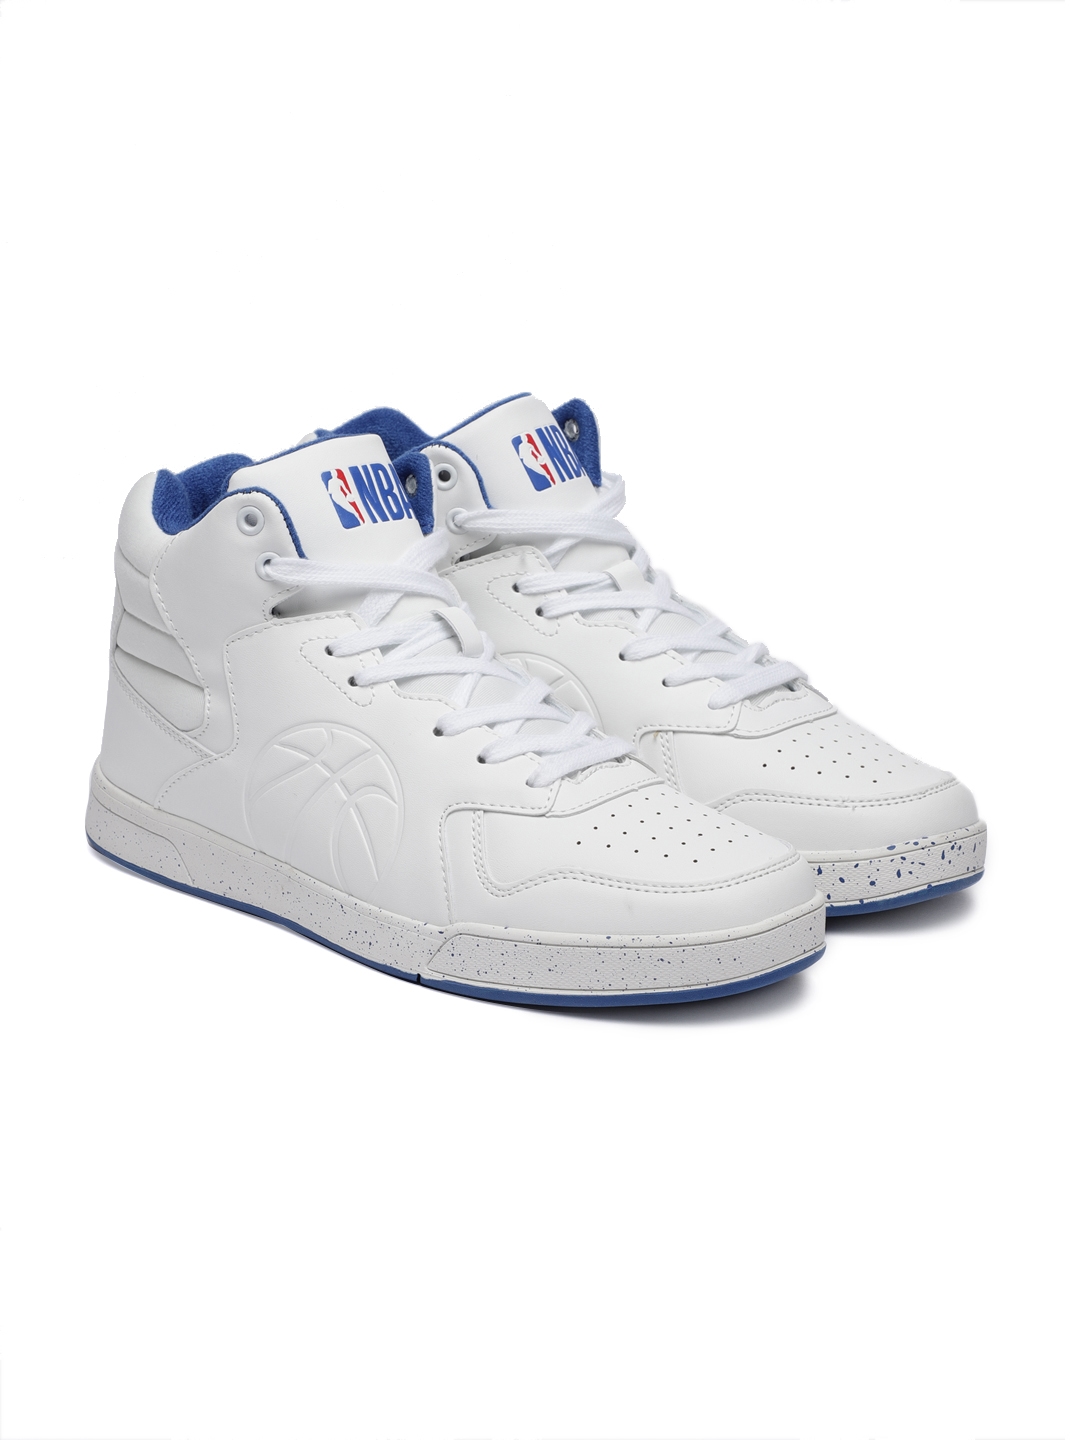 nba white sneakers